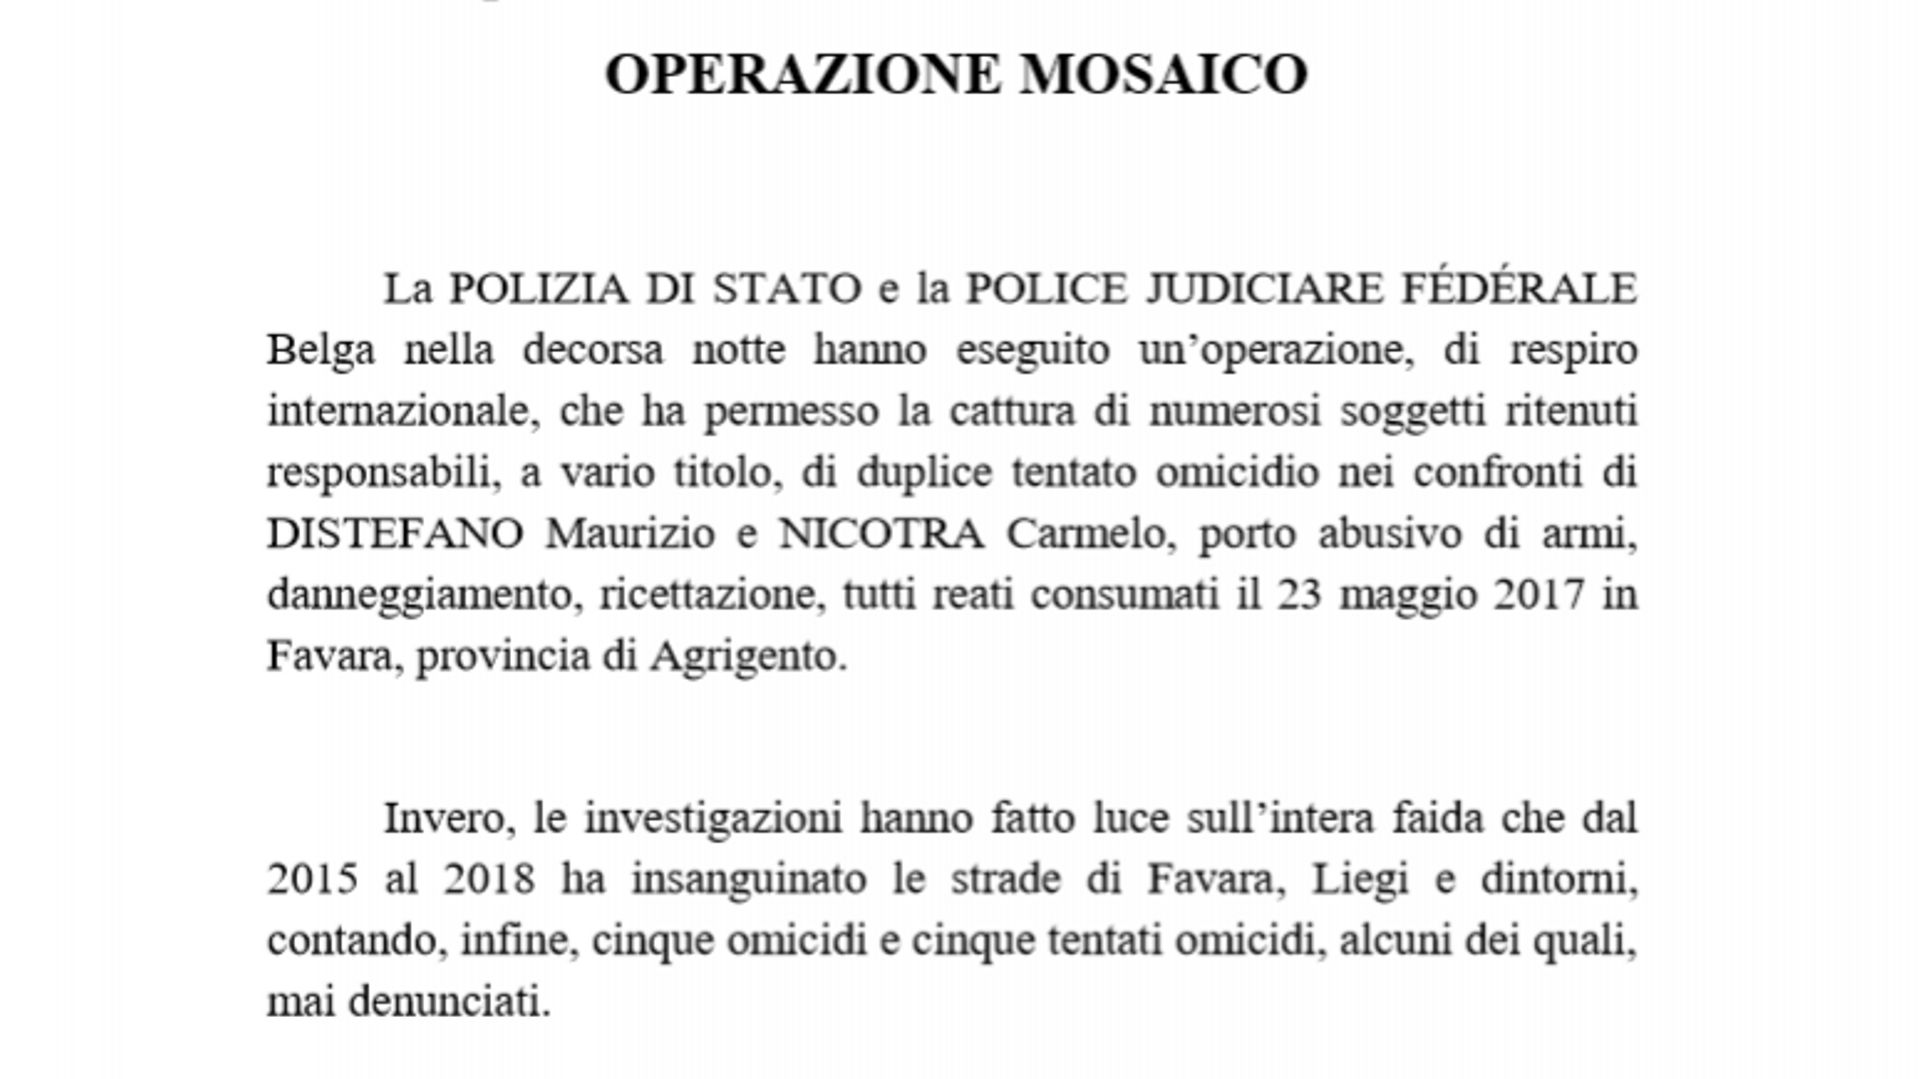 Extrait du communiqué italien relatant une opération coordonnée par l’unité antimafia de Palerme et le bureau du procureur de Liège en septembre